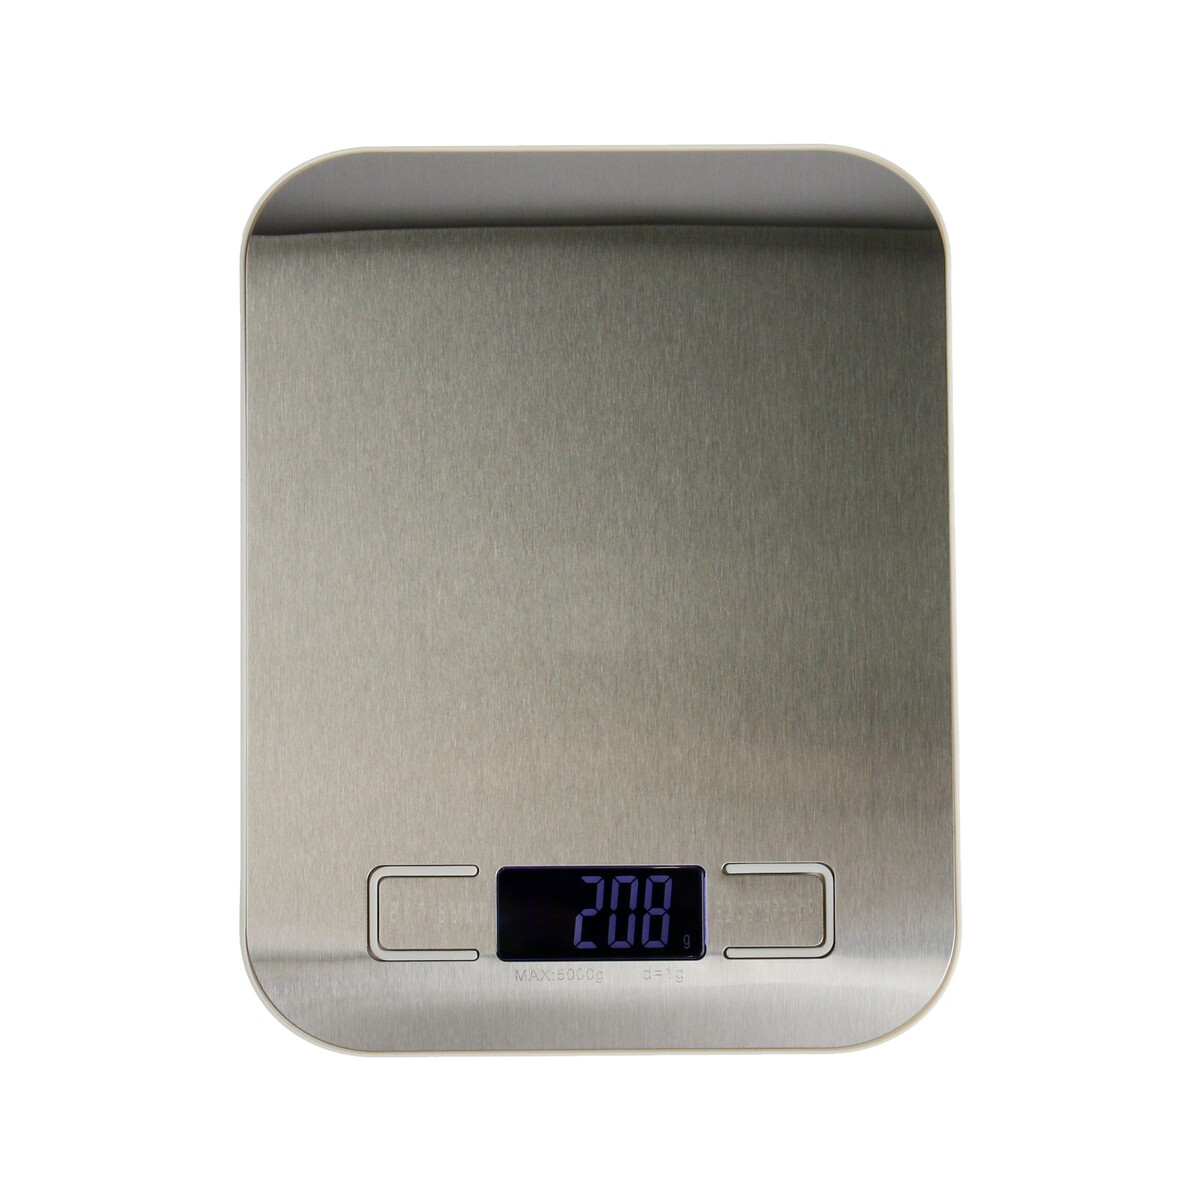 Весы кухонные luazon lve-028, электронные, до 5 кг, металл весы кухонные электронные scarlett sc ks57p62 макс вес 8кг рисунок